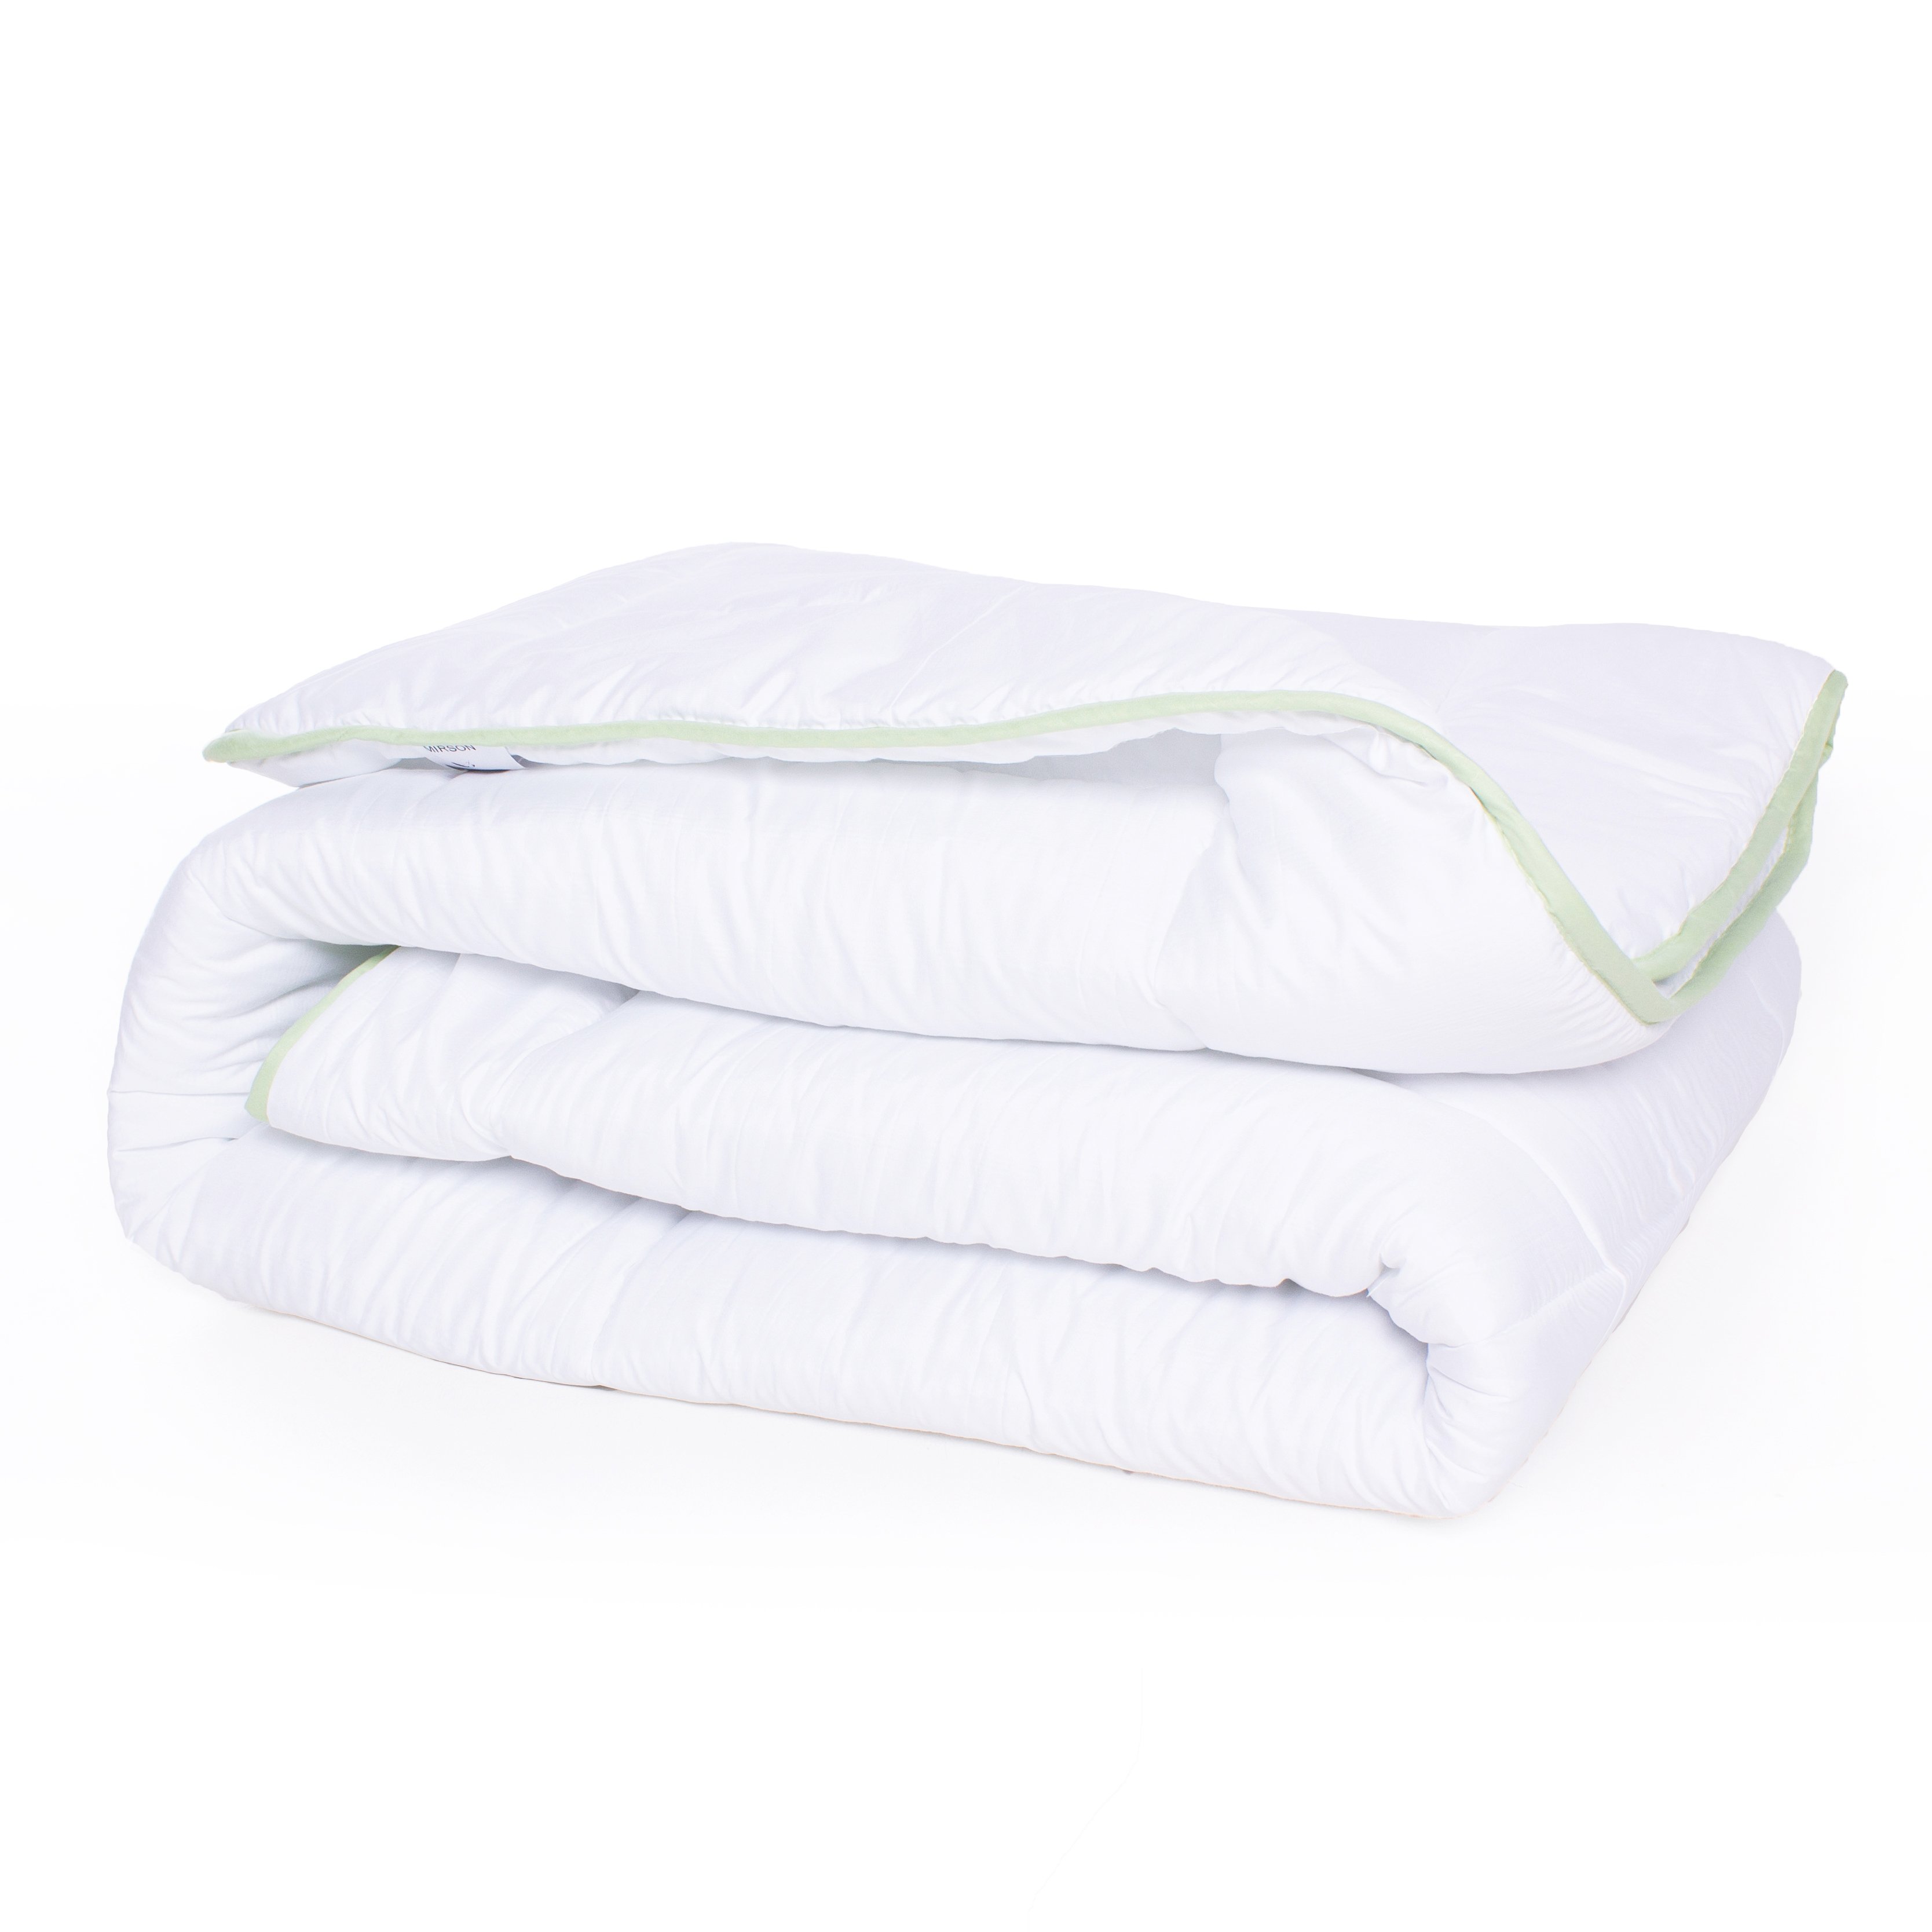 Одеяло антиаллергенное MirSon EcoSilk №003, зимнее, 220x240 см, белое (13026608) - фото 2